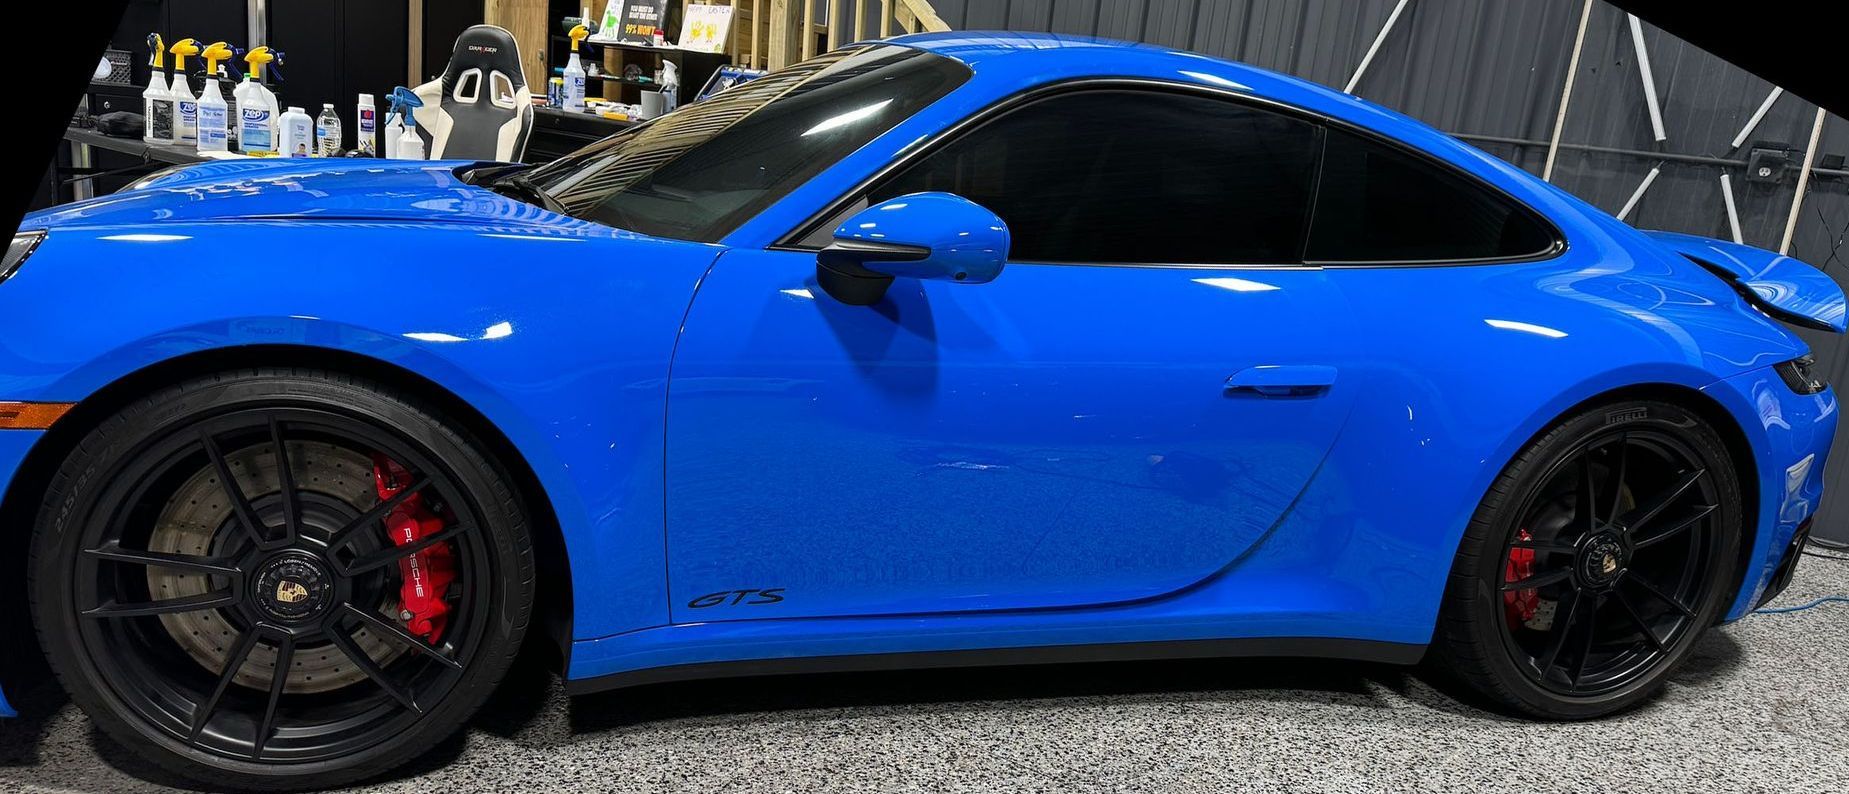 A blue porsche 911 gt3 is parked in a garage.